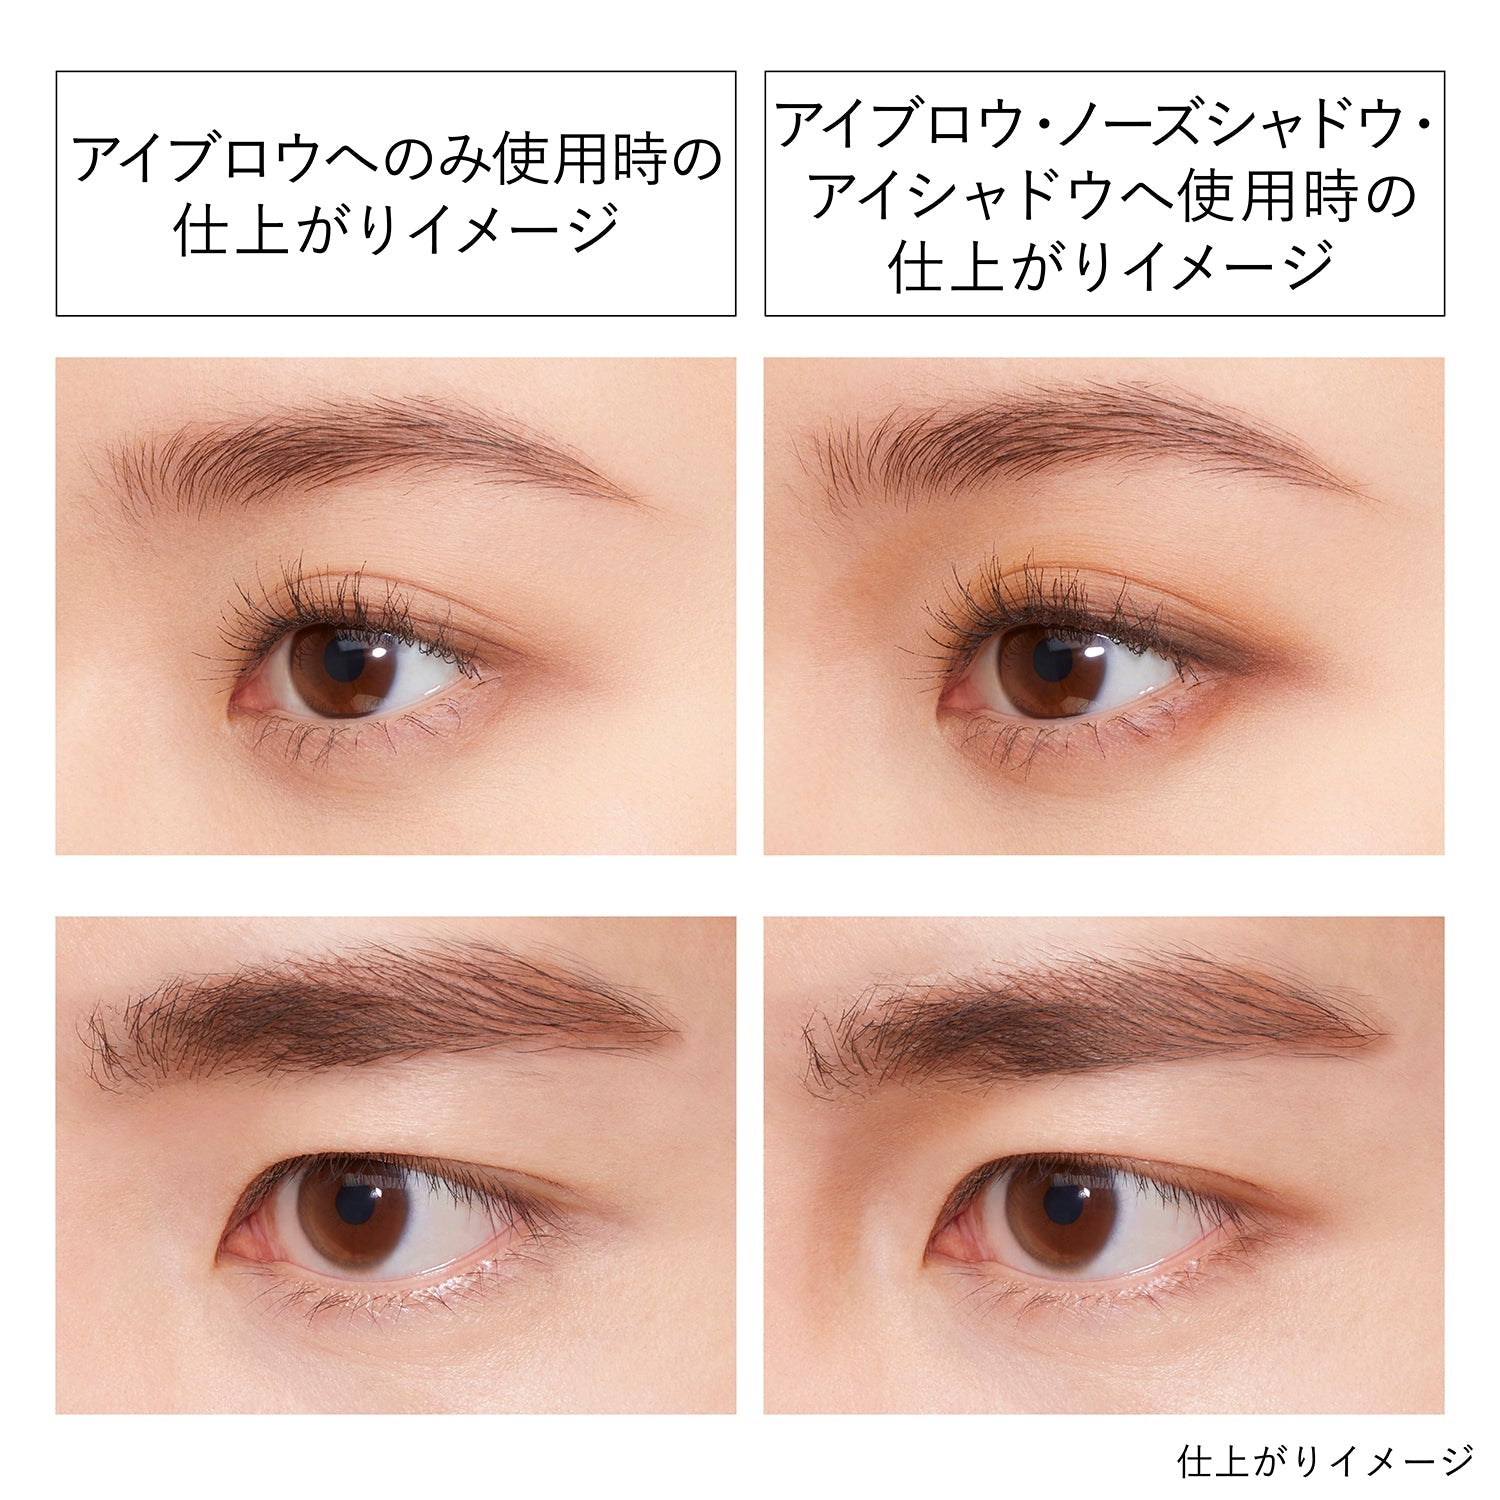 Kanebo Eyebrow Duo - Ichiban Mart